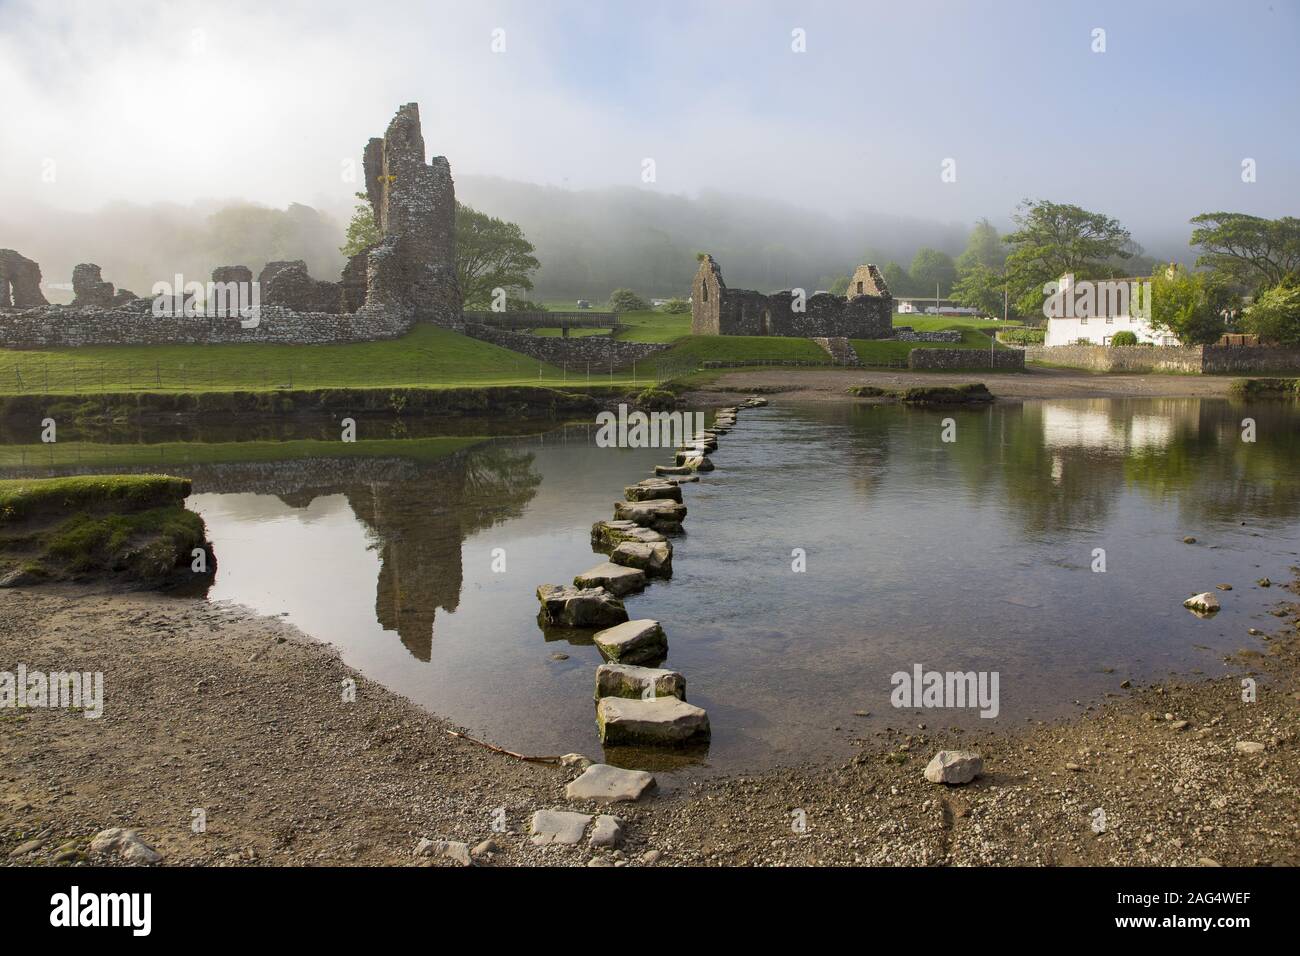 OGMORE, dans le sud du Pays de Galles, Royaume-Uni - Mai 22, 2015 : Matin brumeux au château de Ogmore avec pierres de gué pour traverser la rivière Ogmore Banque D'Images